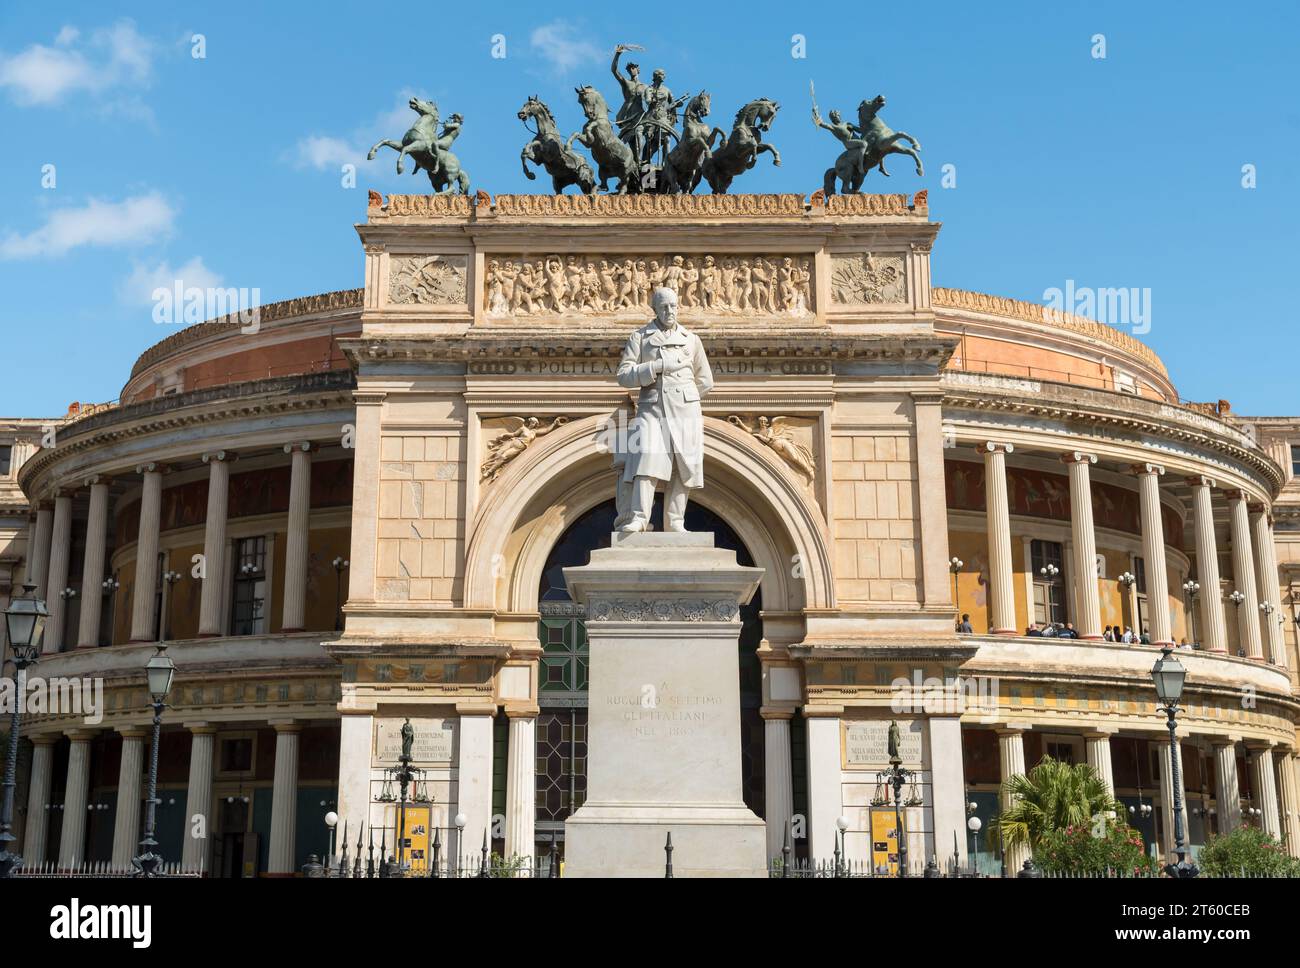 Palermo, Sicily, Italy - October 7, 2017: View of the Politeama Garibaldi theater, located in Piazza Ruggero Settimo in Palermo. Stock Photo